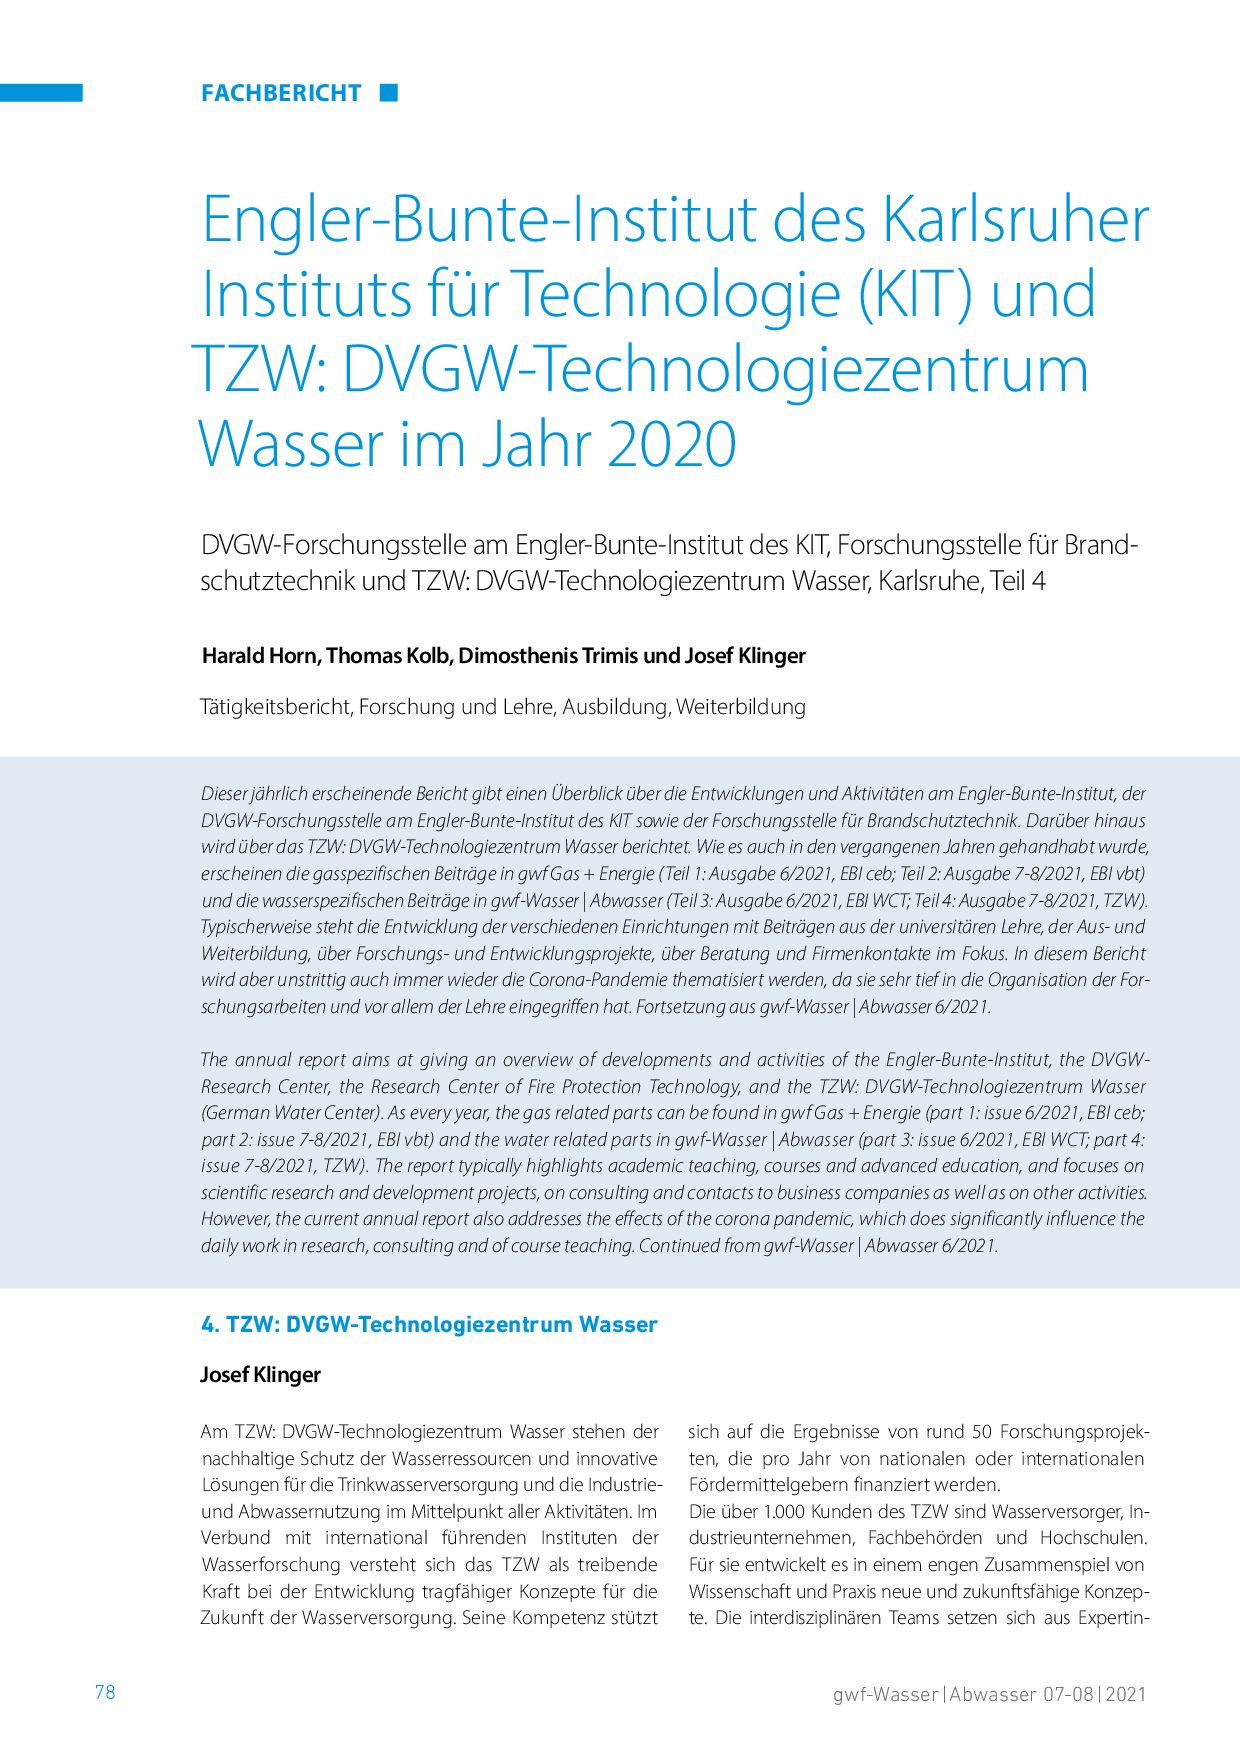 Engler-Bunte-Institut des Karlsruher Instituts für Technologie (KIT) und TZW: DVGW-Technologiezentrum Wasser im Jahr 2020